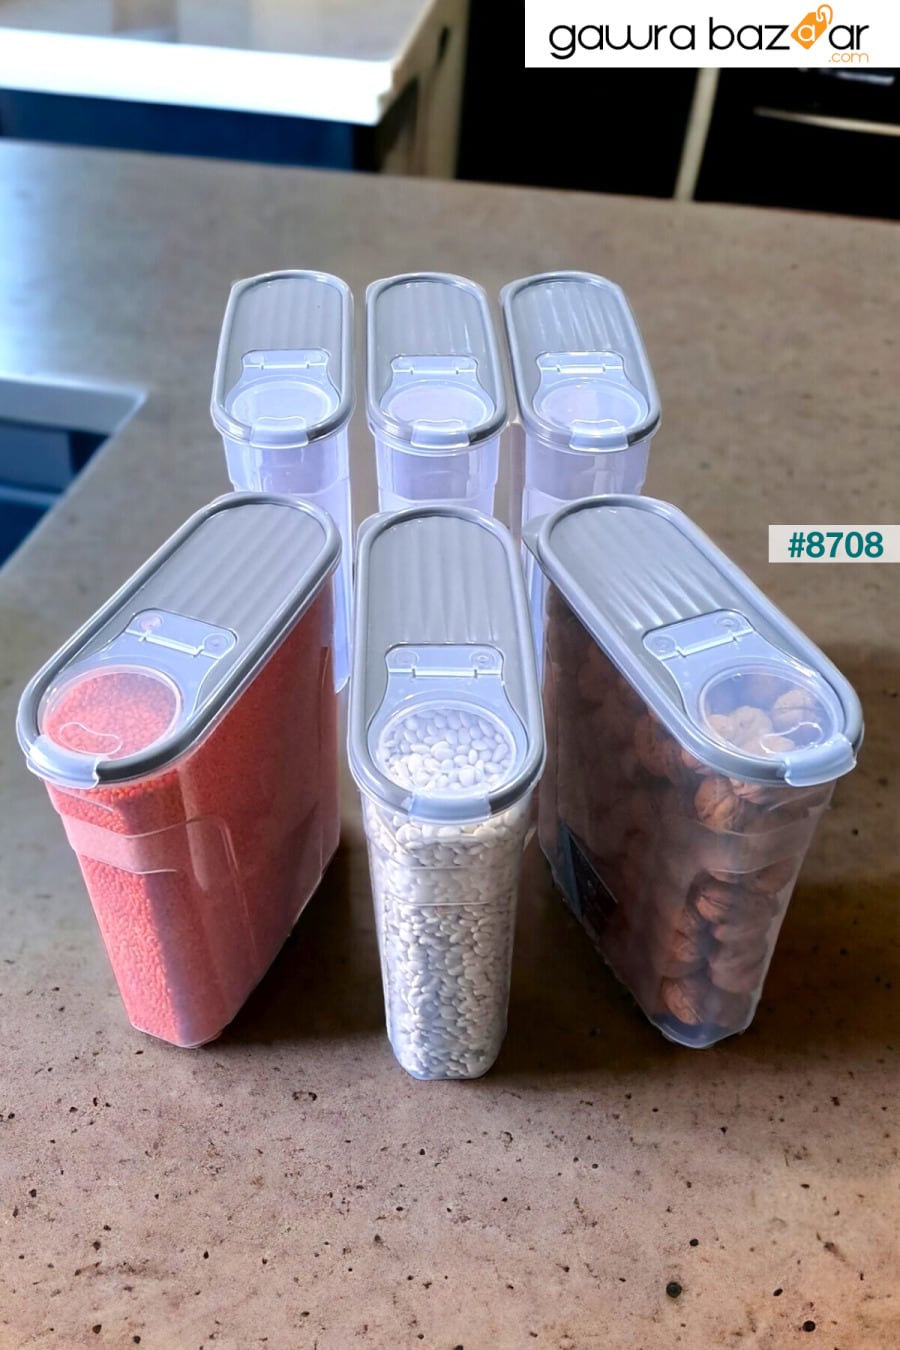 حاوية تخزين البقوليات الغذائية (6 لتر) مجموعة من 6 صناديق أنيقة فاخرة إجمالي اللون الرمادي الناعم 12 قطعة SWENCRAFT 3